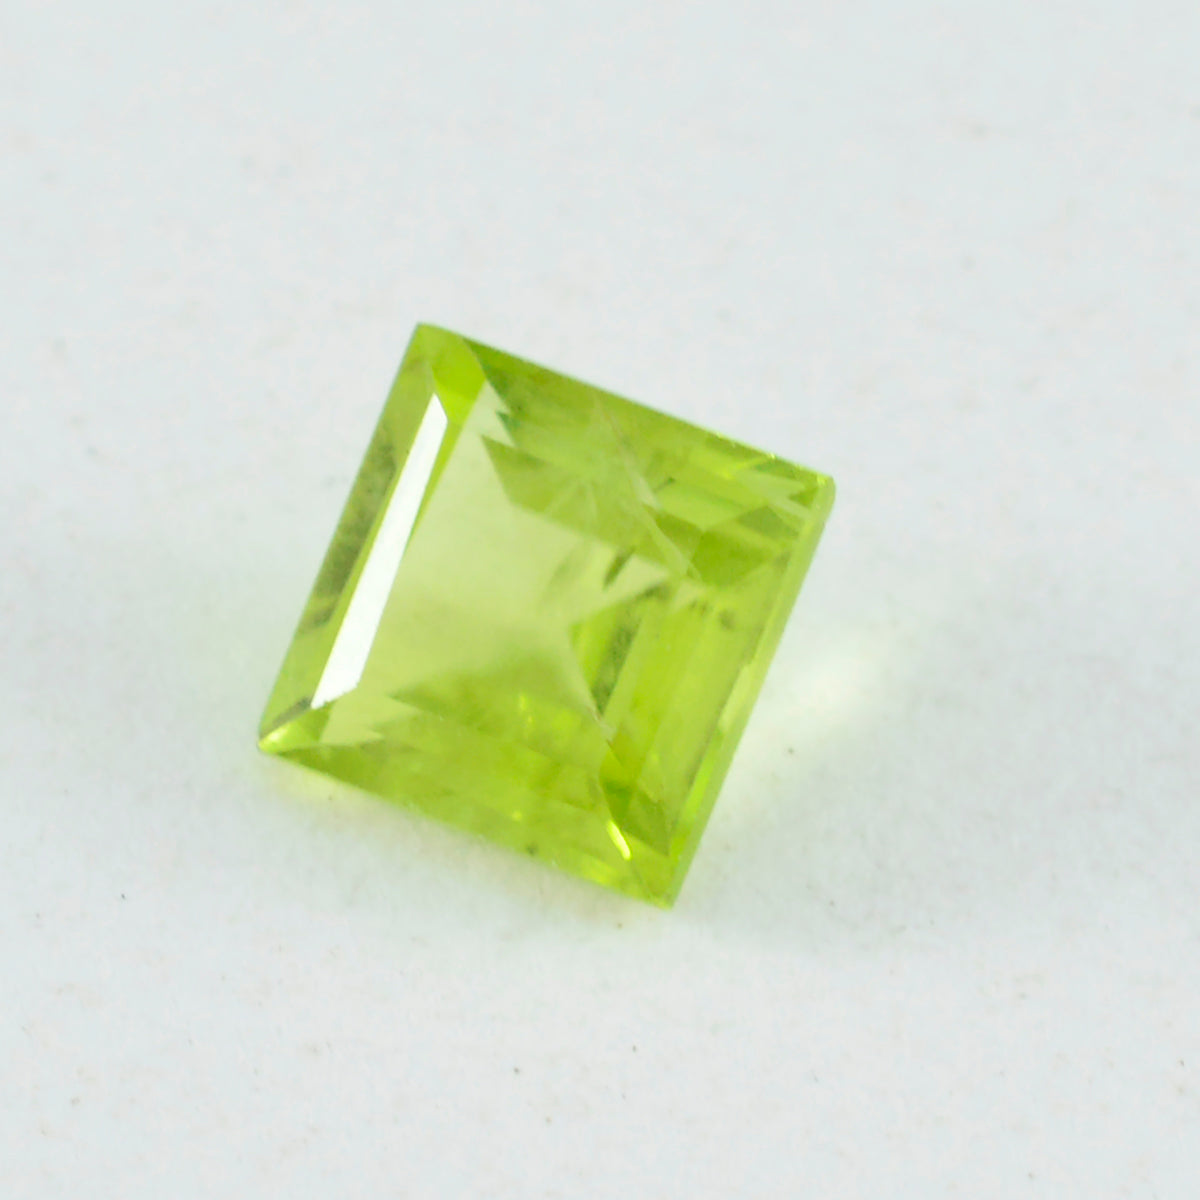 riyogems 1 шт. натуральный зеленый перидот ограненный 13x13 мм квадратной формы, россыпной драгоценный камень потрясающего качества